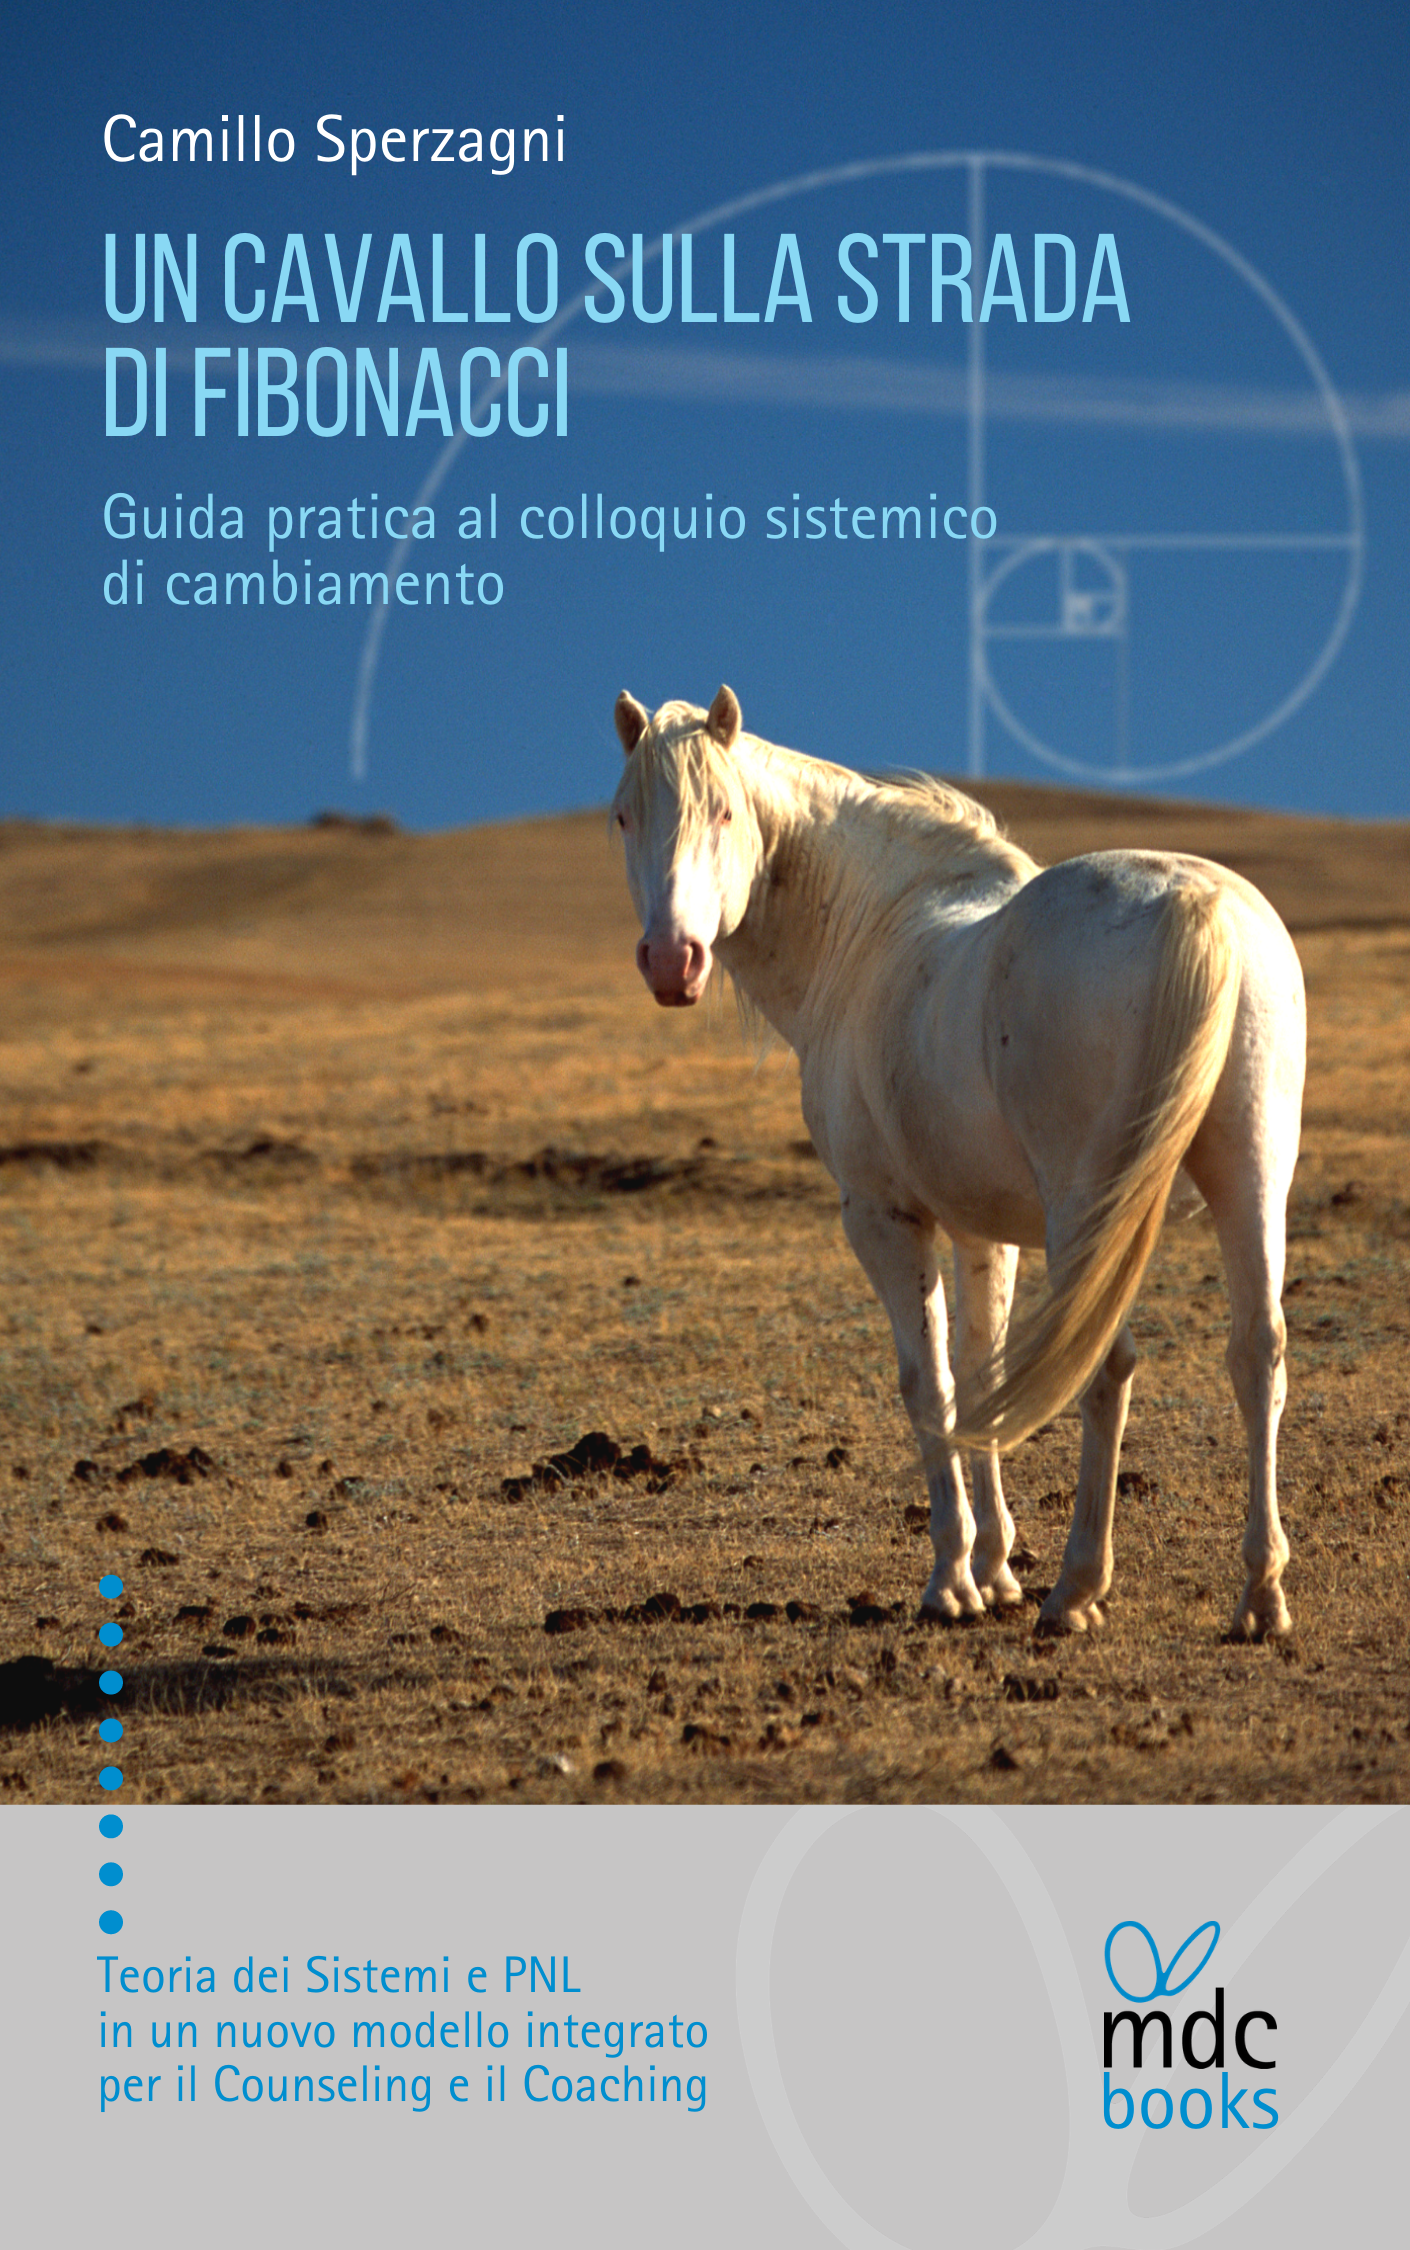 Un cavallo sulla strada di Fibonacci: il manuale per Counselor e Coach